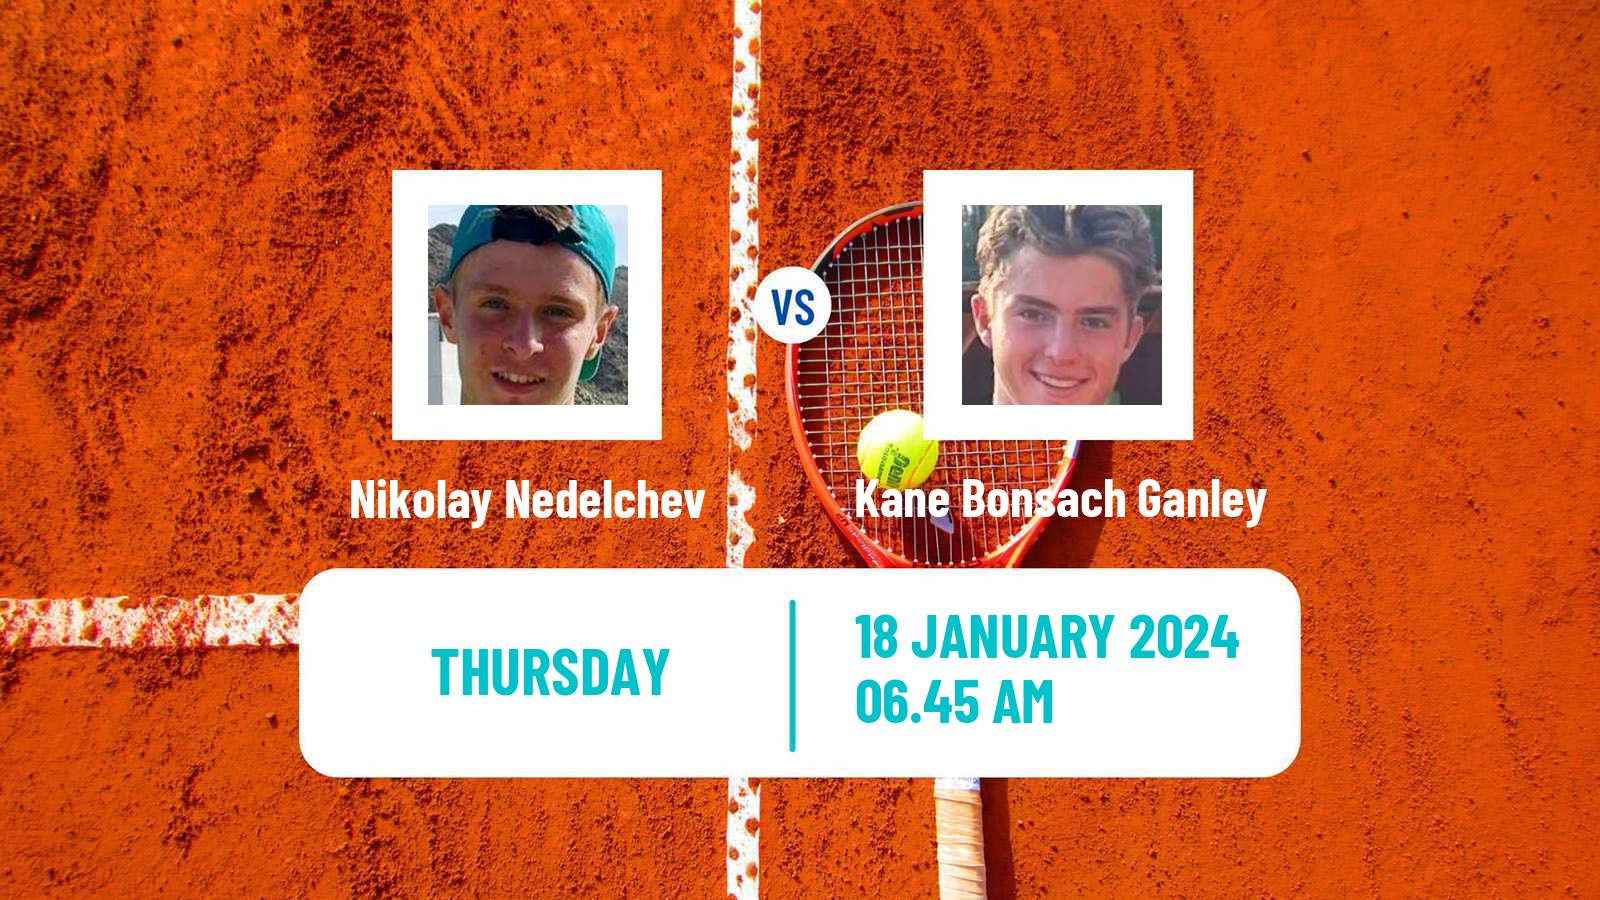 Tennis ITF M15 Manacor 2 Men Nikolay Nedelchev - Kane Bonsach Ganley